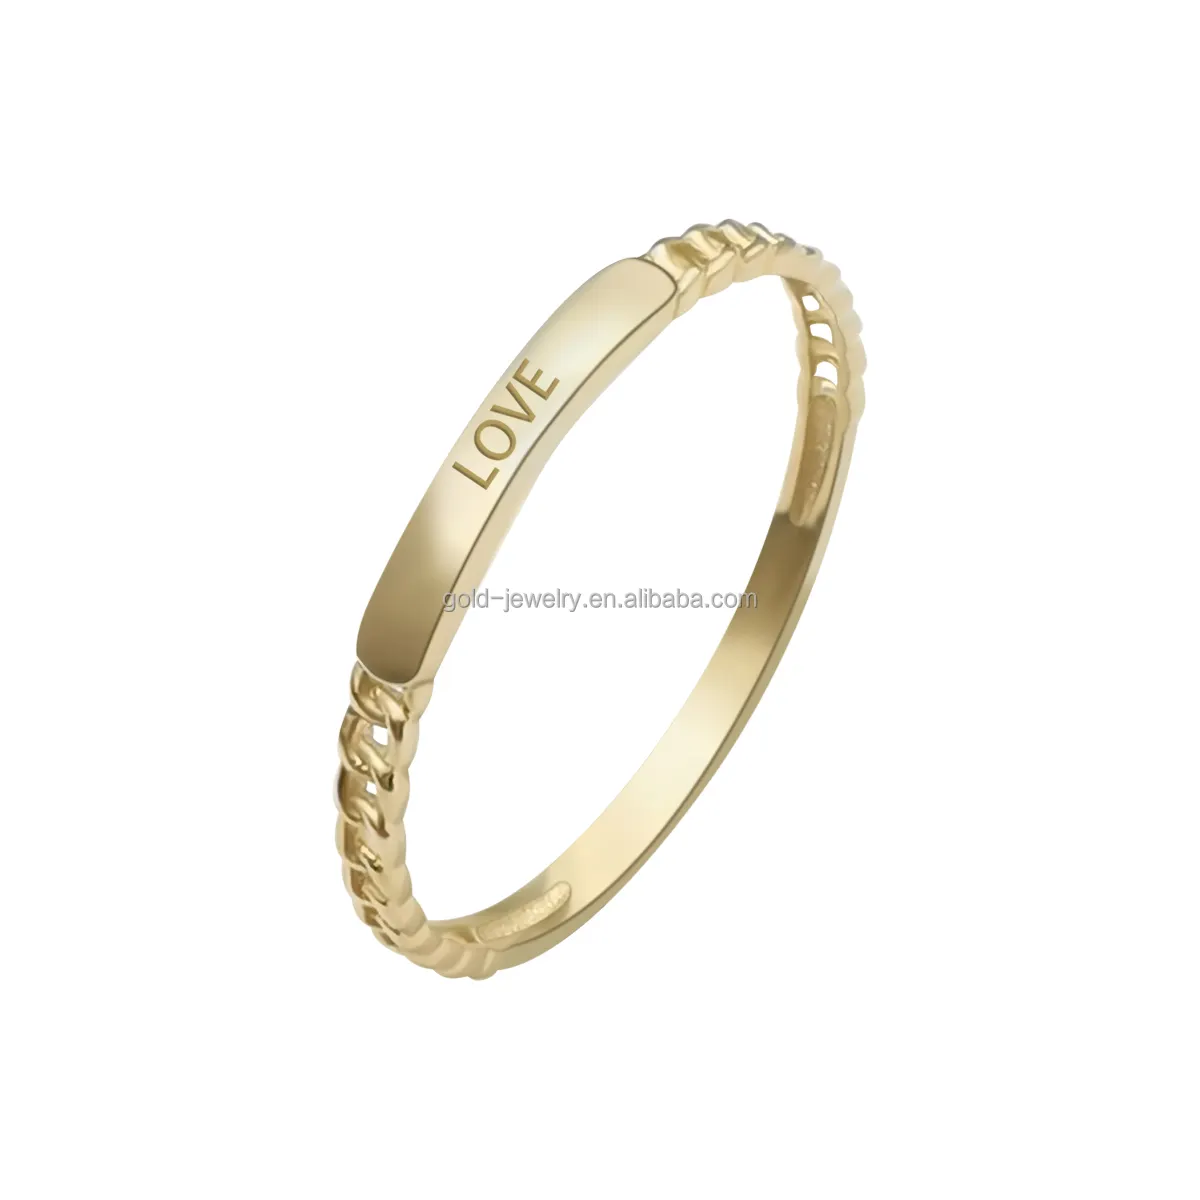 Anel de ouro, amor, corrente, anel feminino, presente na moda 9k 14k, joia de ouro real, moda de noivado bandas ou anéis